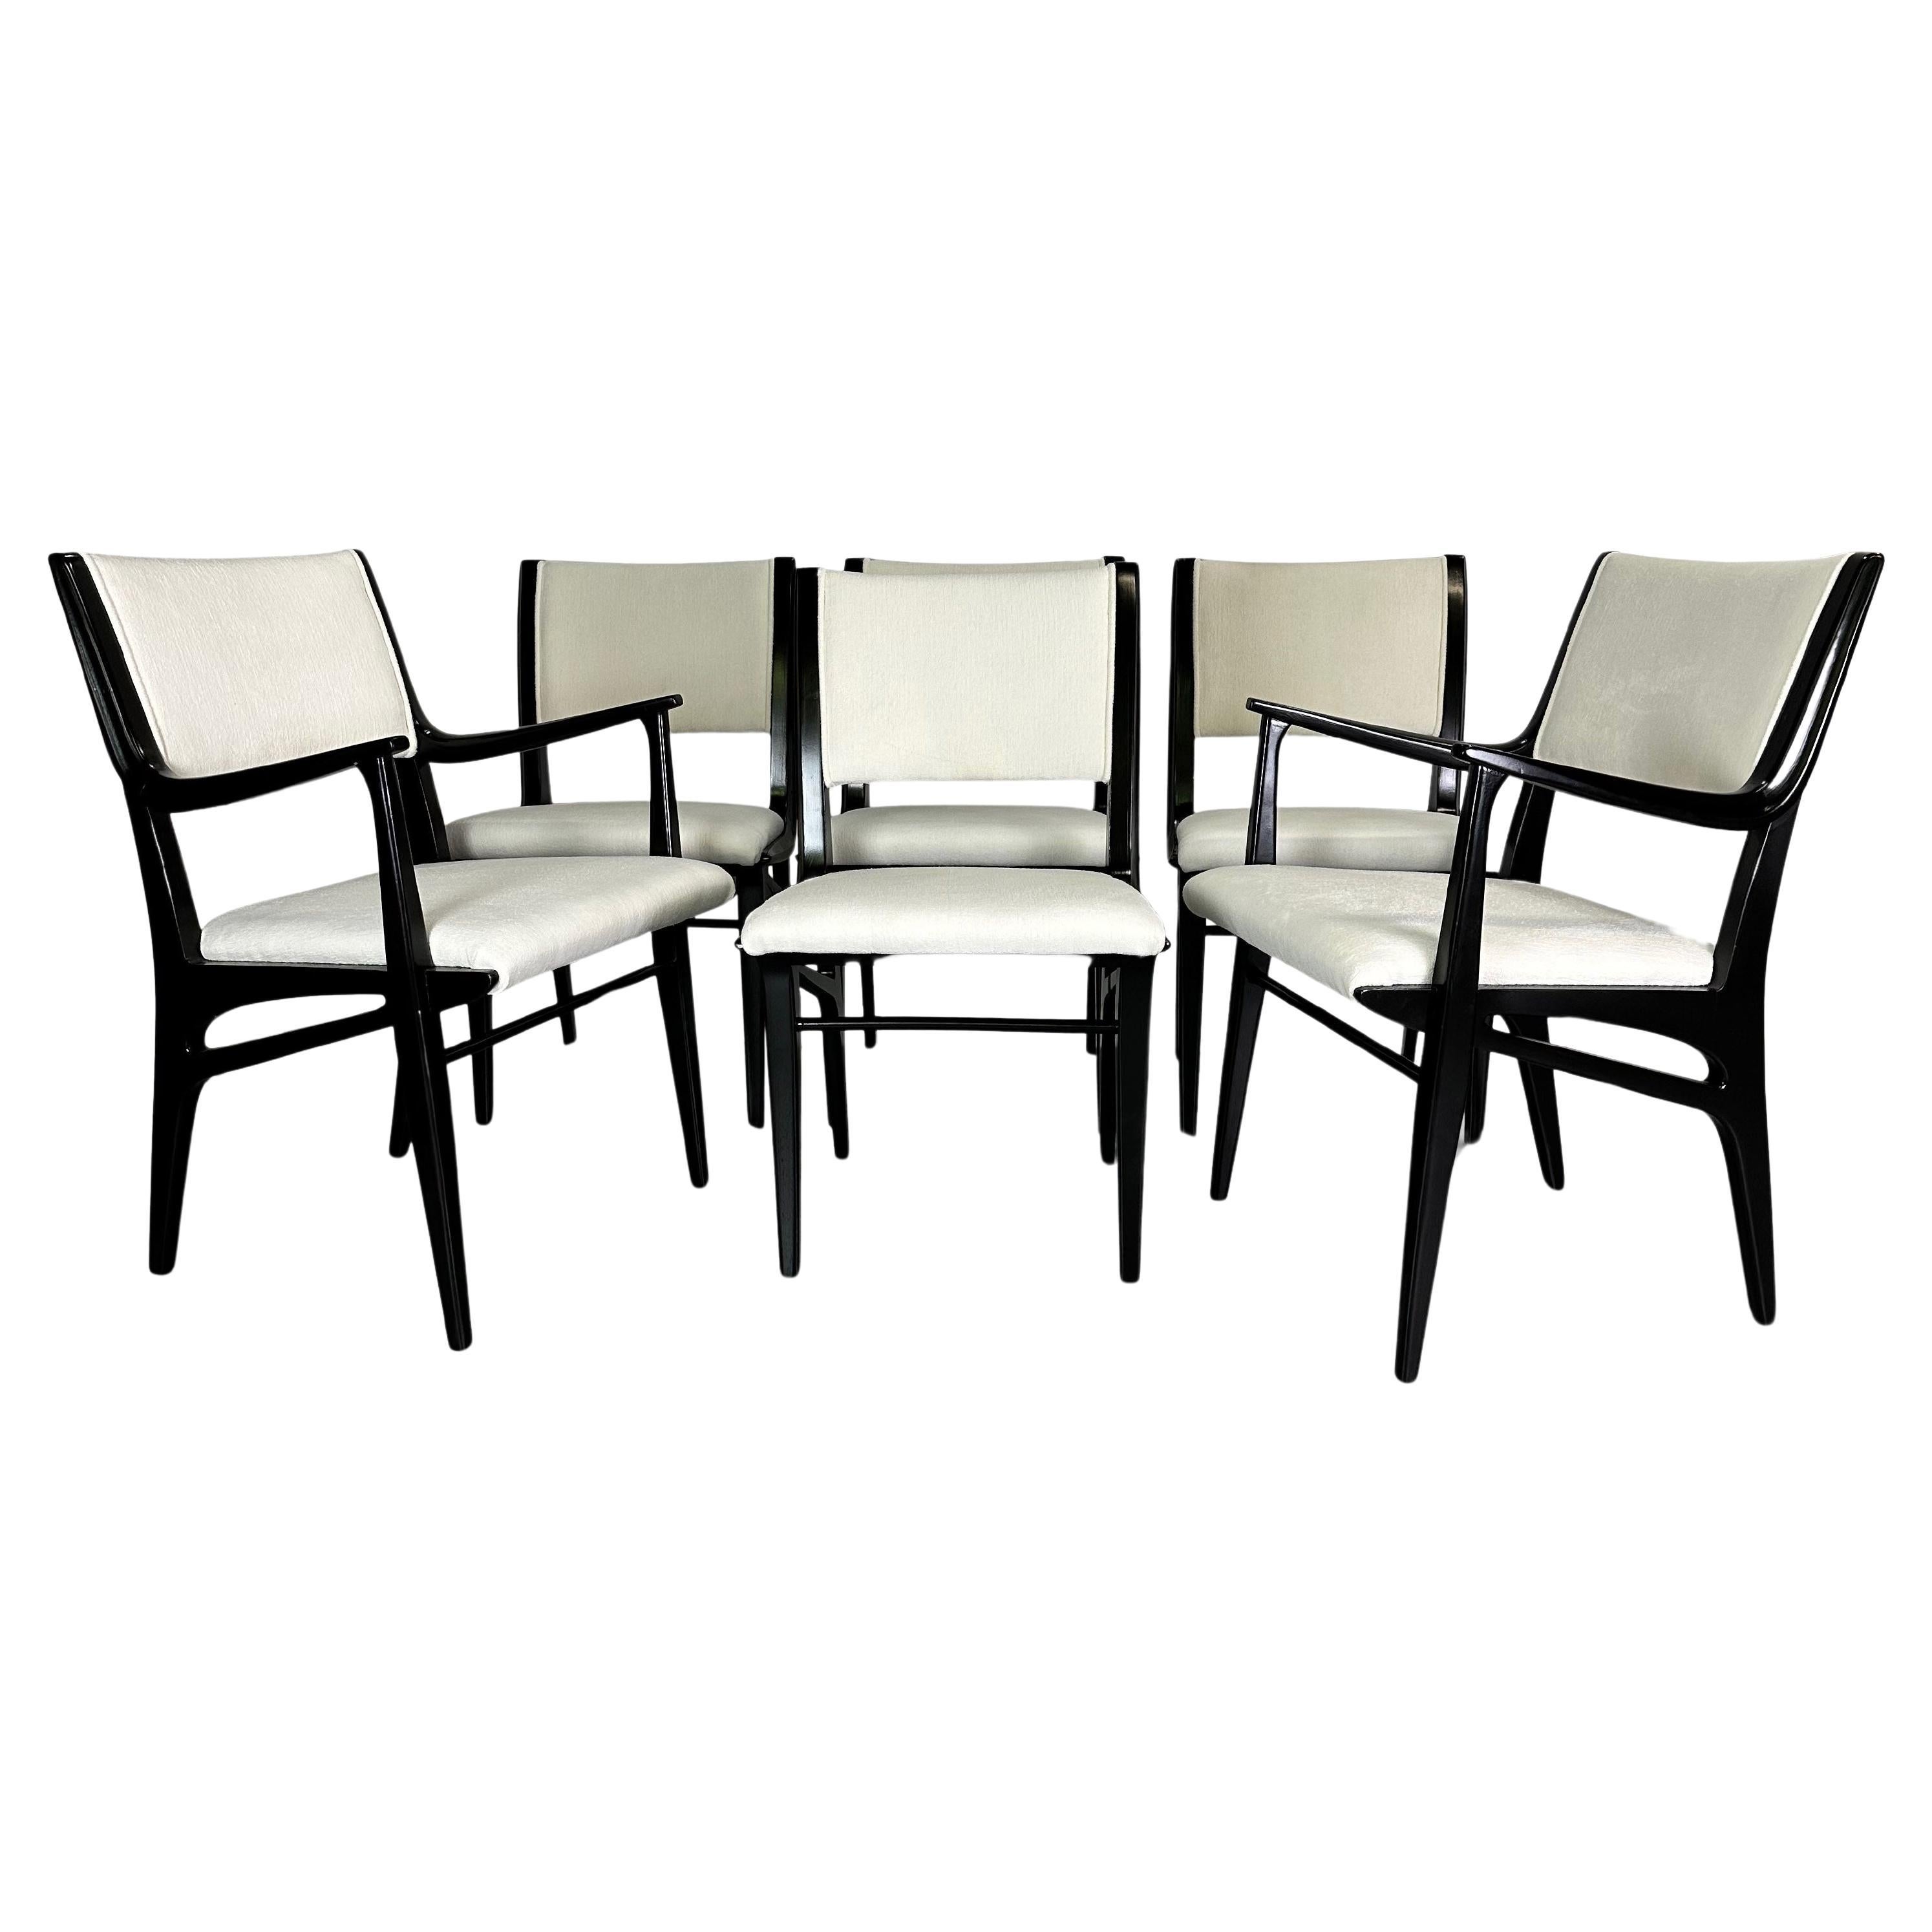 Magnifique ensemble de six chaises de salle à manger John Van Koert, ces chaises incroyablement conçues ont un style moderniste si sophistiqué qu'elles mettront en valeur n'importe quelle salle à manger. Ces chaises ont été laquées en noir et